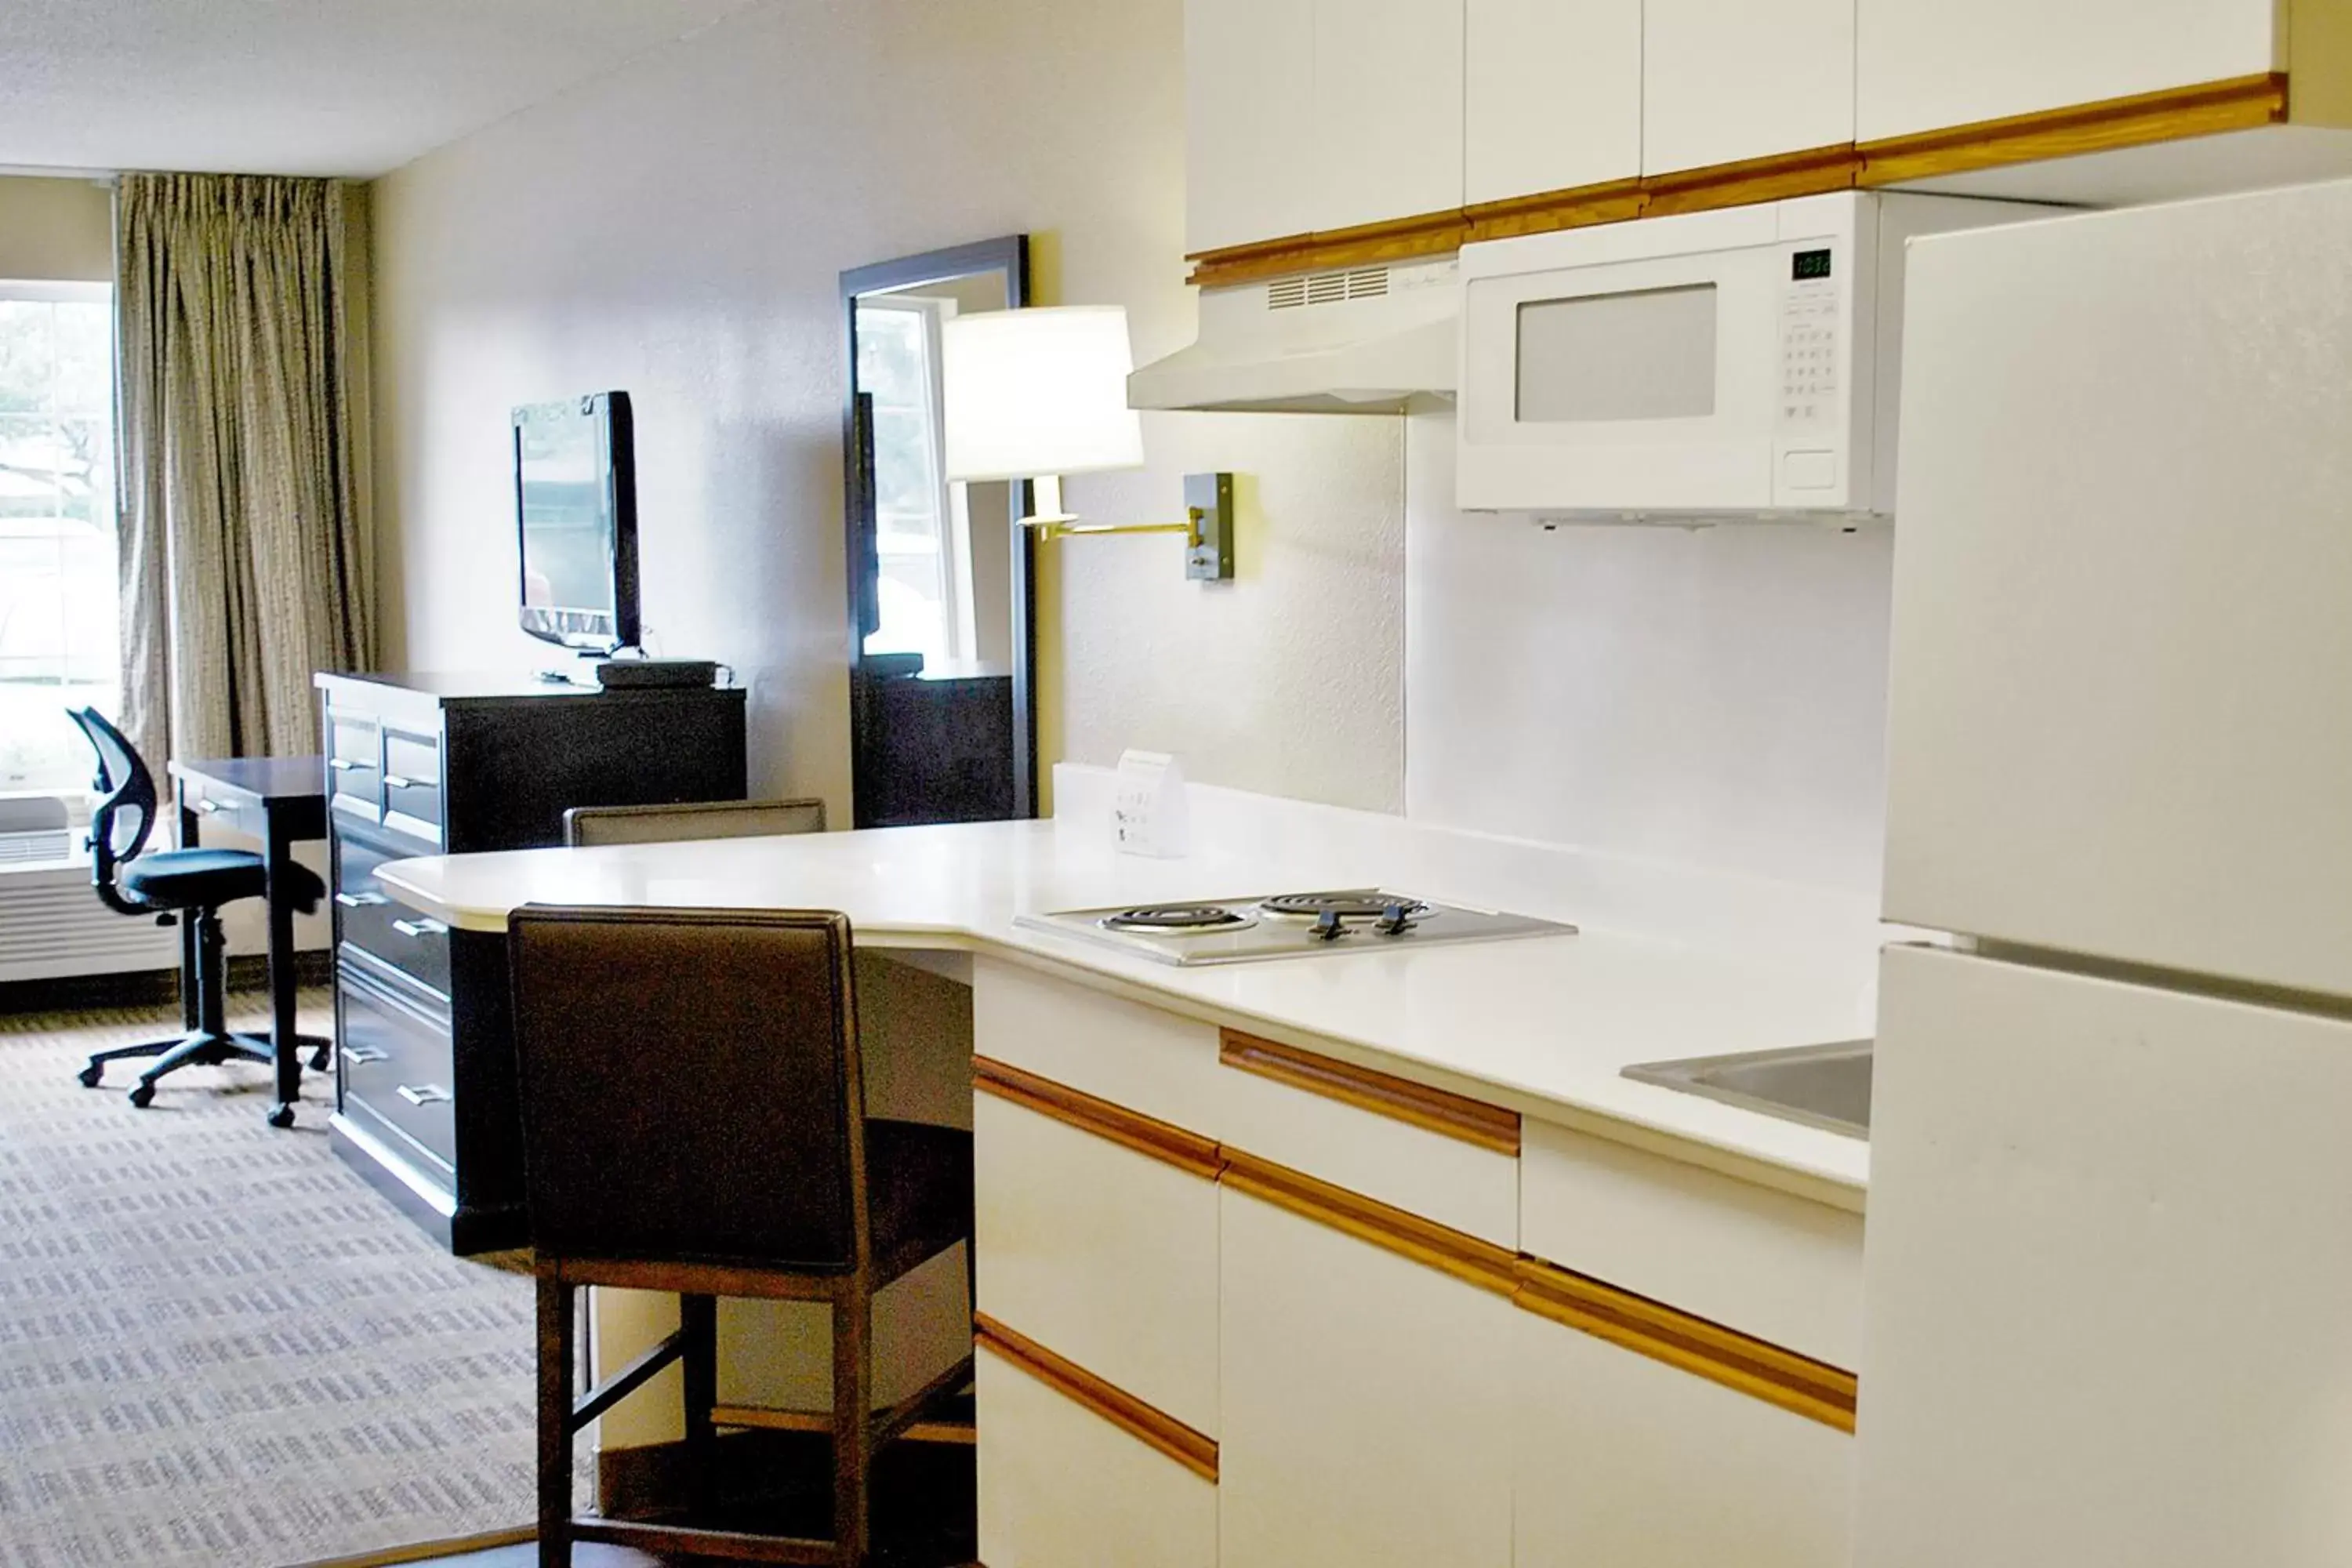 Kitchen or kitchenette, Kitchen/Kitchenette in Extended Stay America Suites - Las Vegas - Midtown